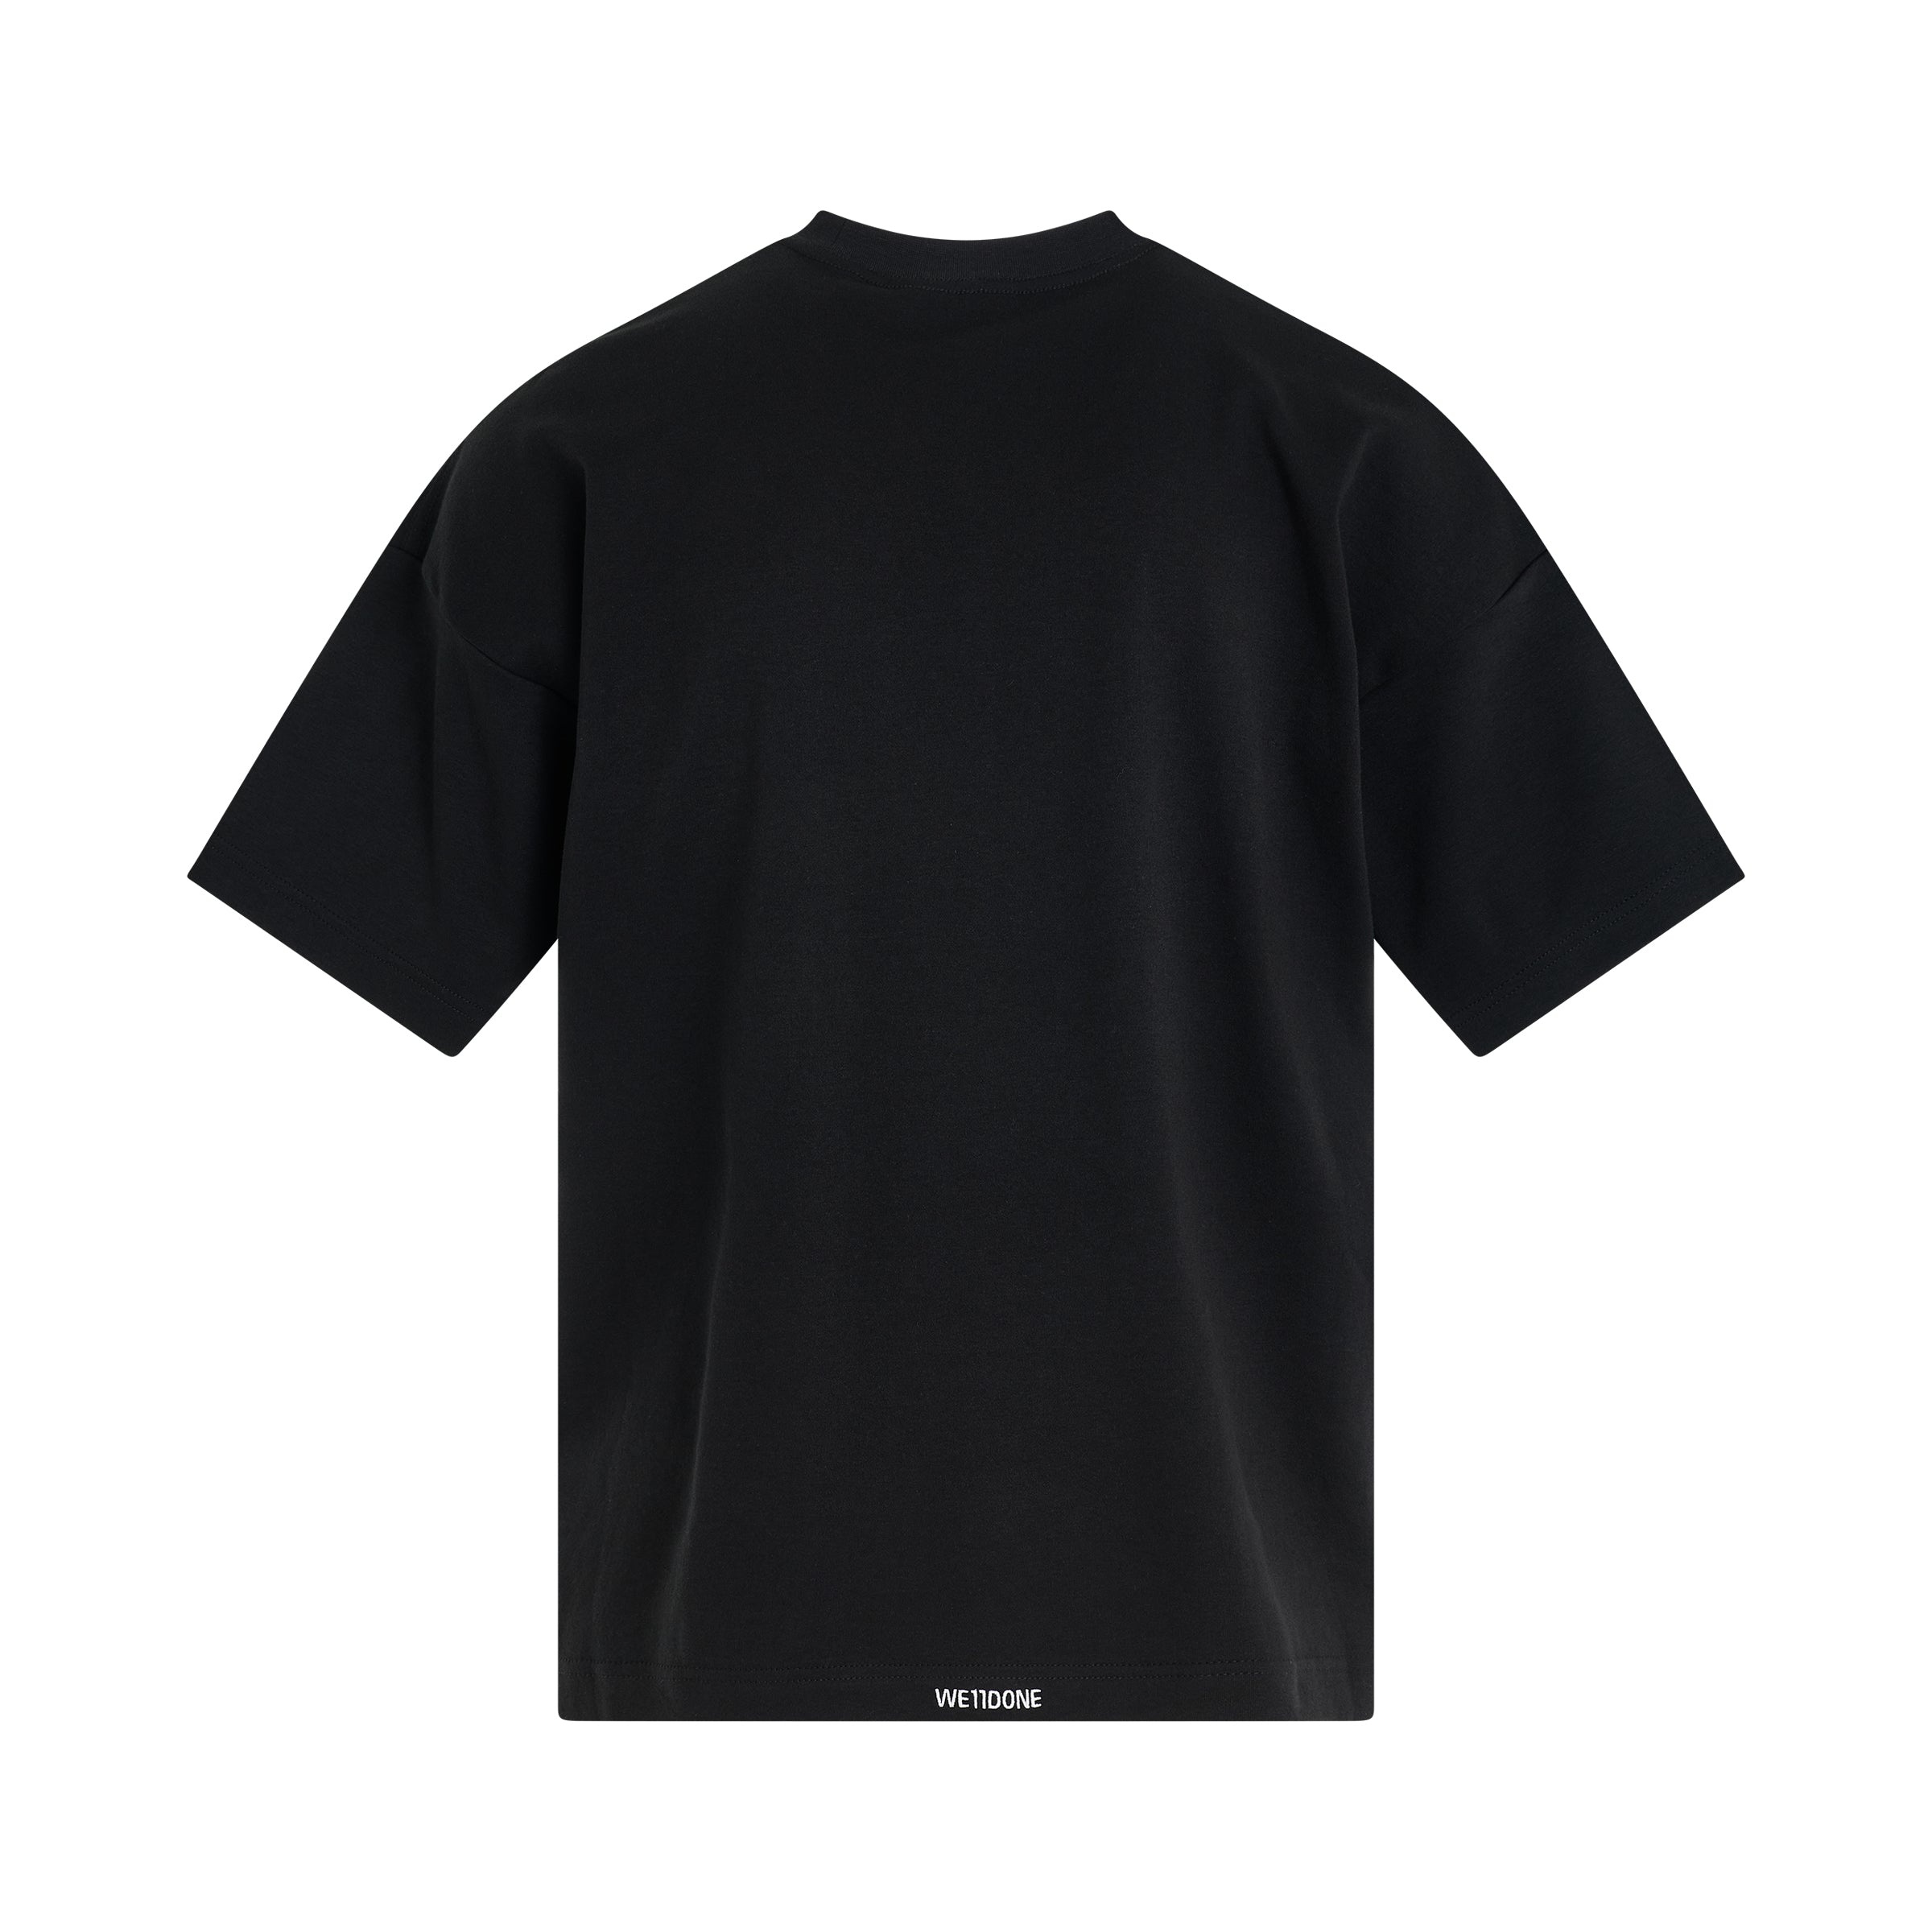 Spine Skull Print T-Shirt in Black - 4